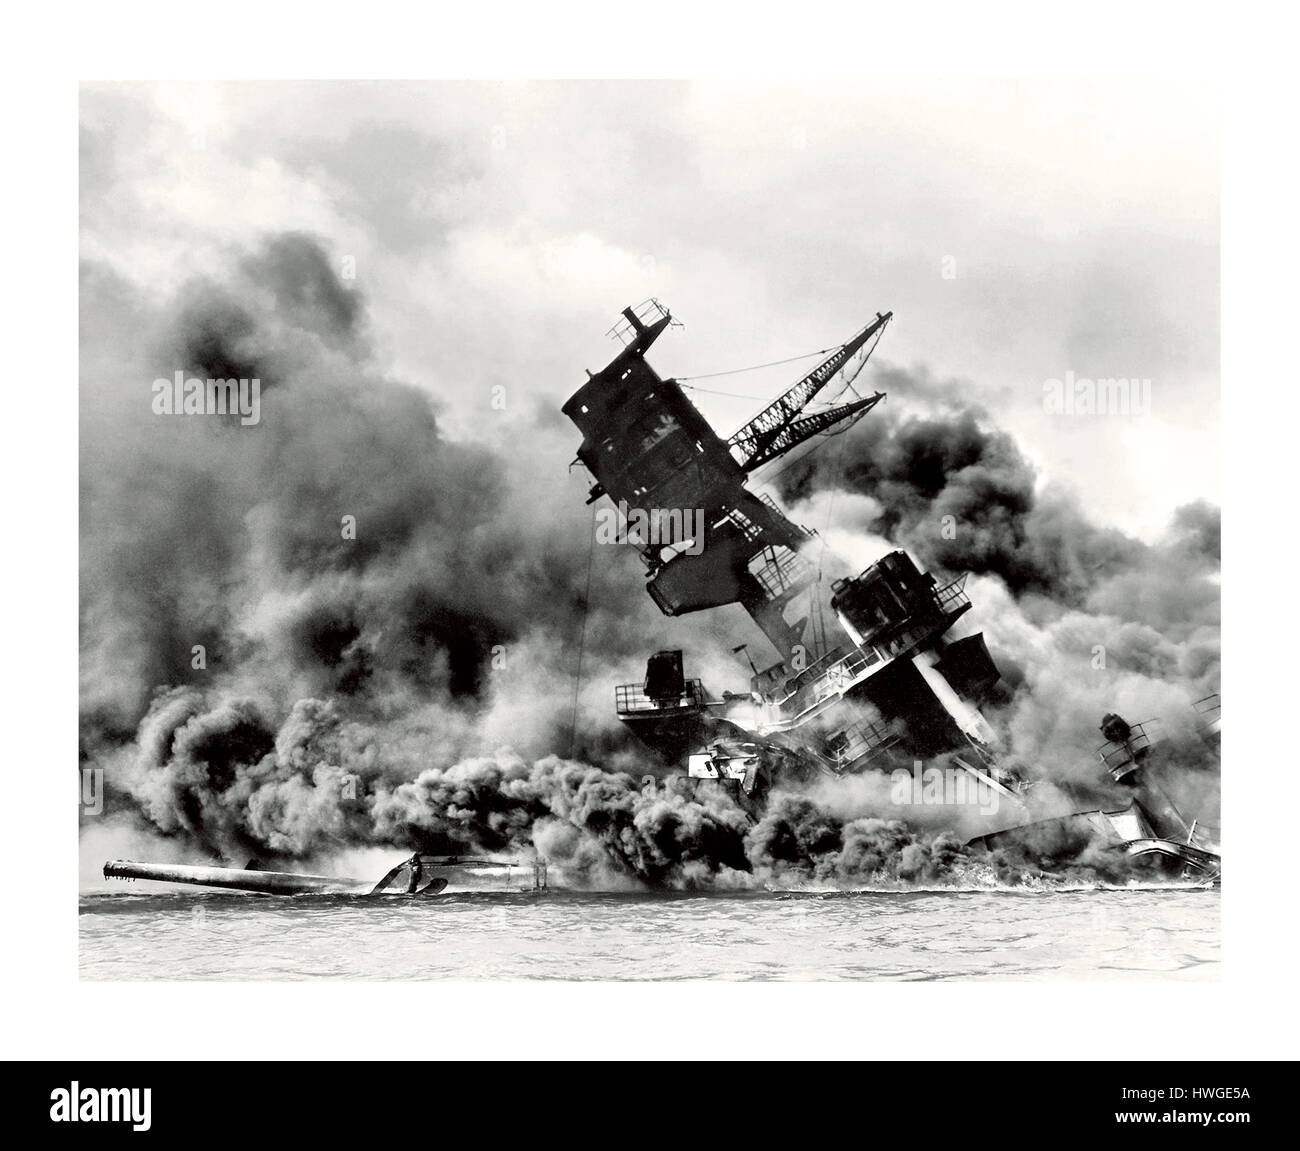 Ataque de Pearl Harbor ataque japonés a Peral Harbor el 7 de diciembre de 1941 el acorazado USS Arizona BB-39 battleship en fuego y hundimiento Foto de stock